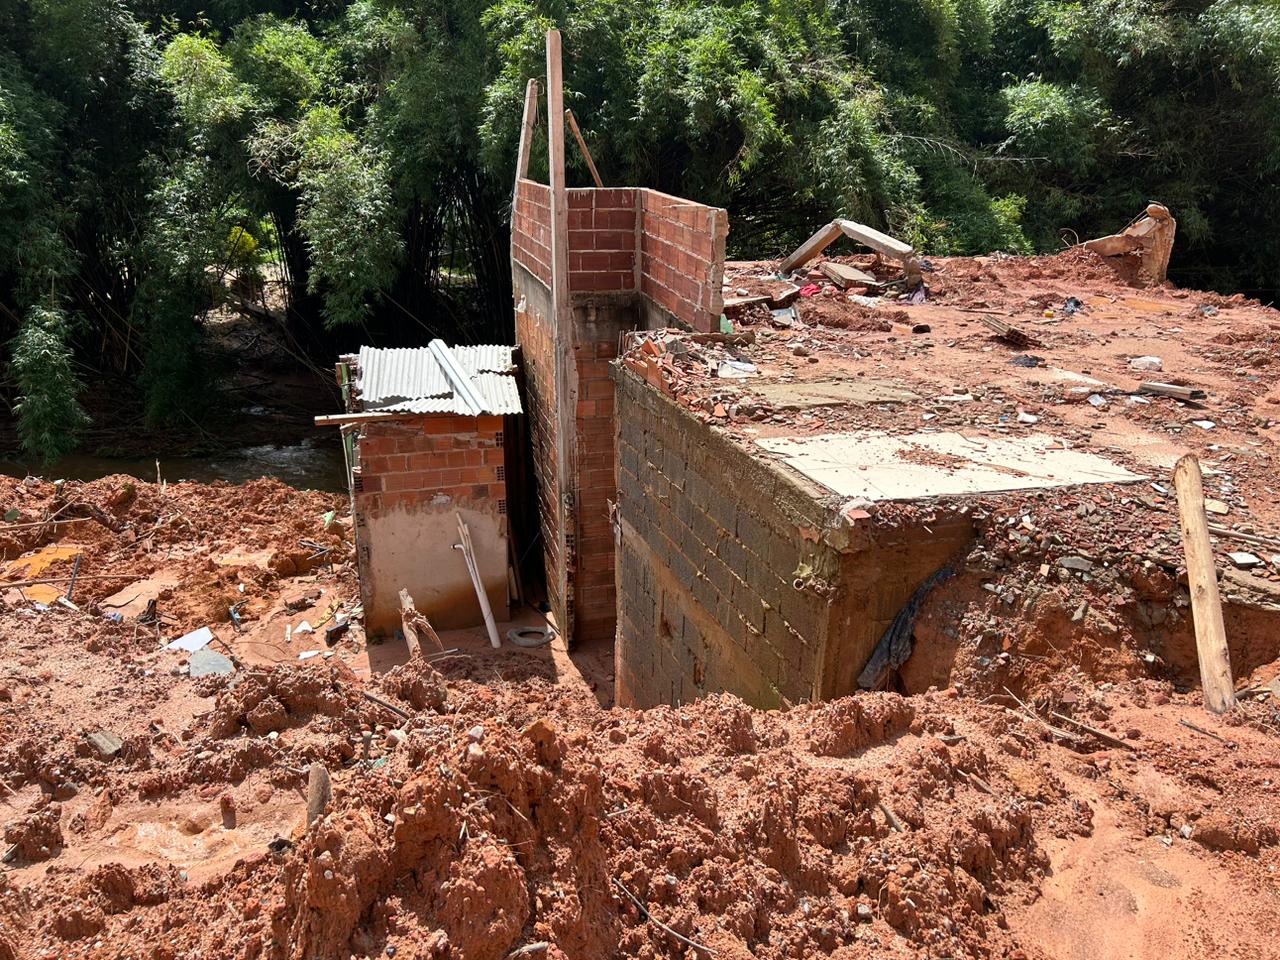 Chuvas de verão: Defesa Civil Nacional reconhece situação de emergência em 117 cidades de Minas Gerais por chuvas intensas